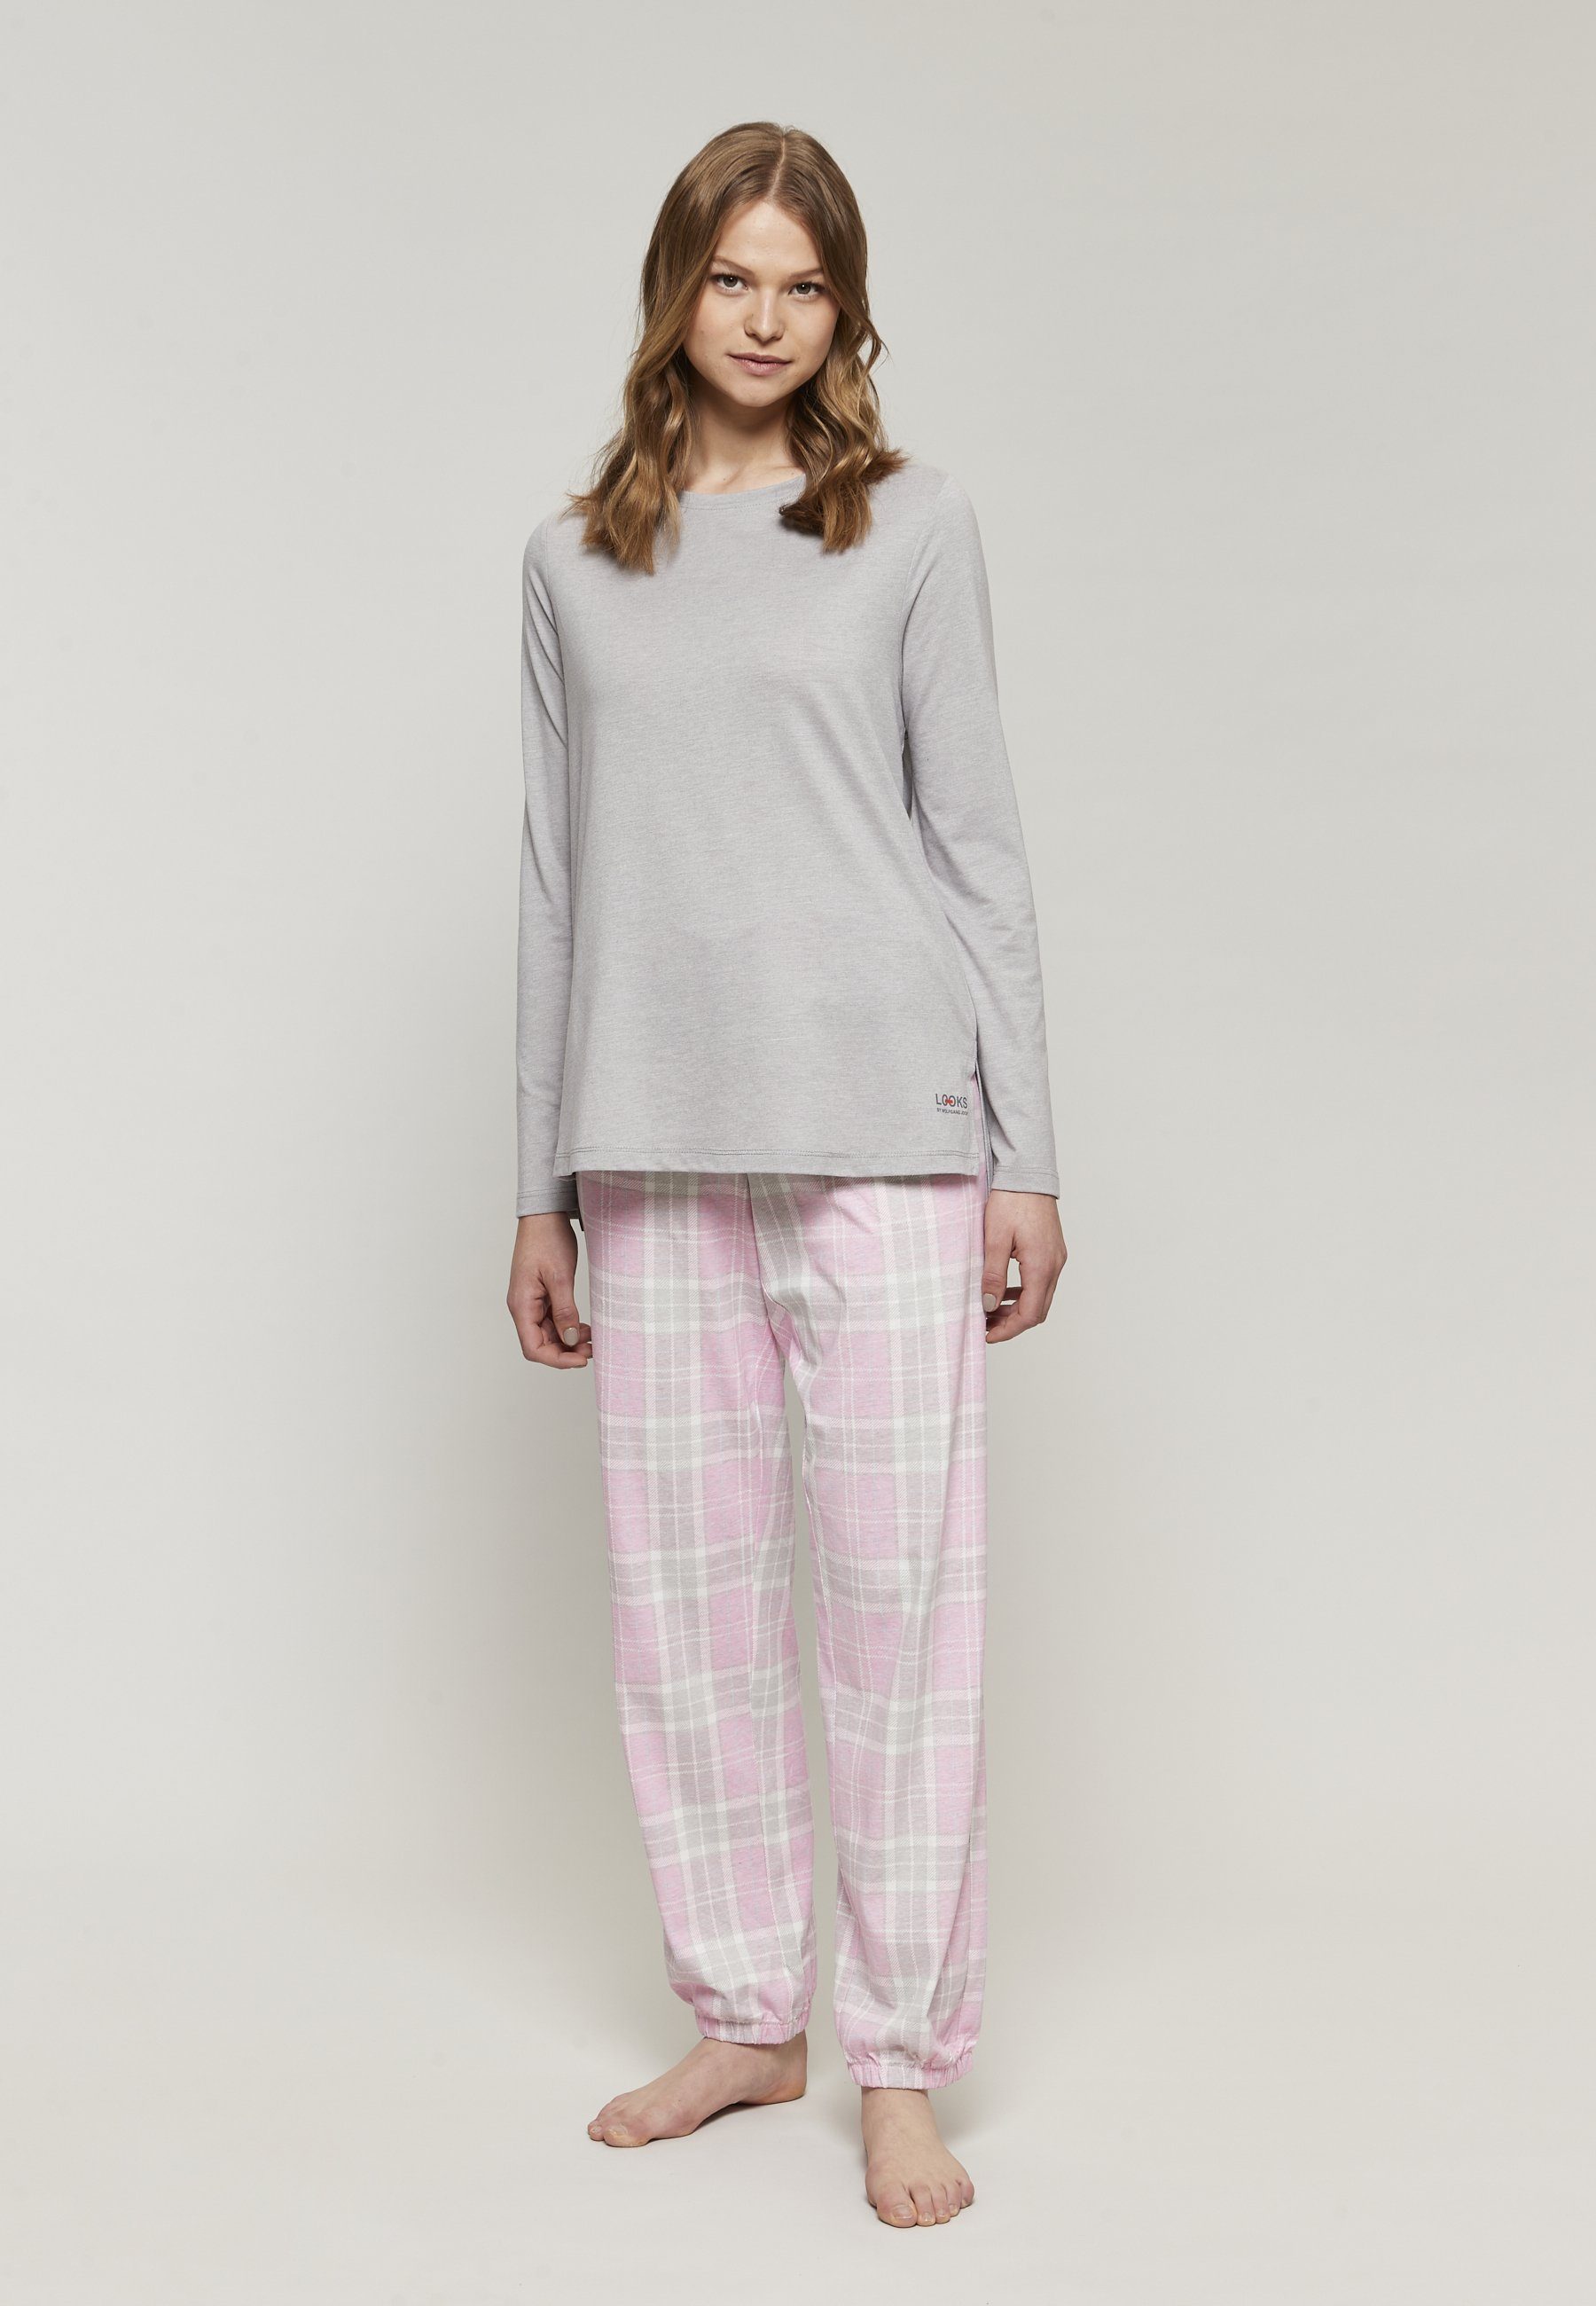 LOOKS by Wolfgang Joop Schlafanzug Ladies pyjama, long